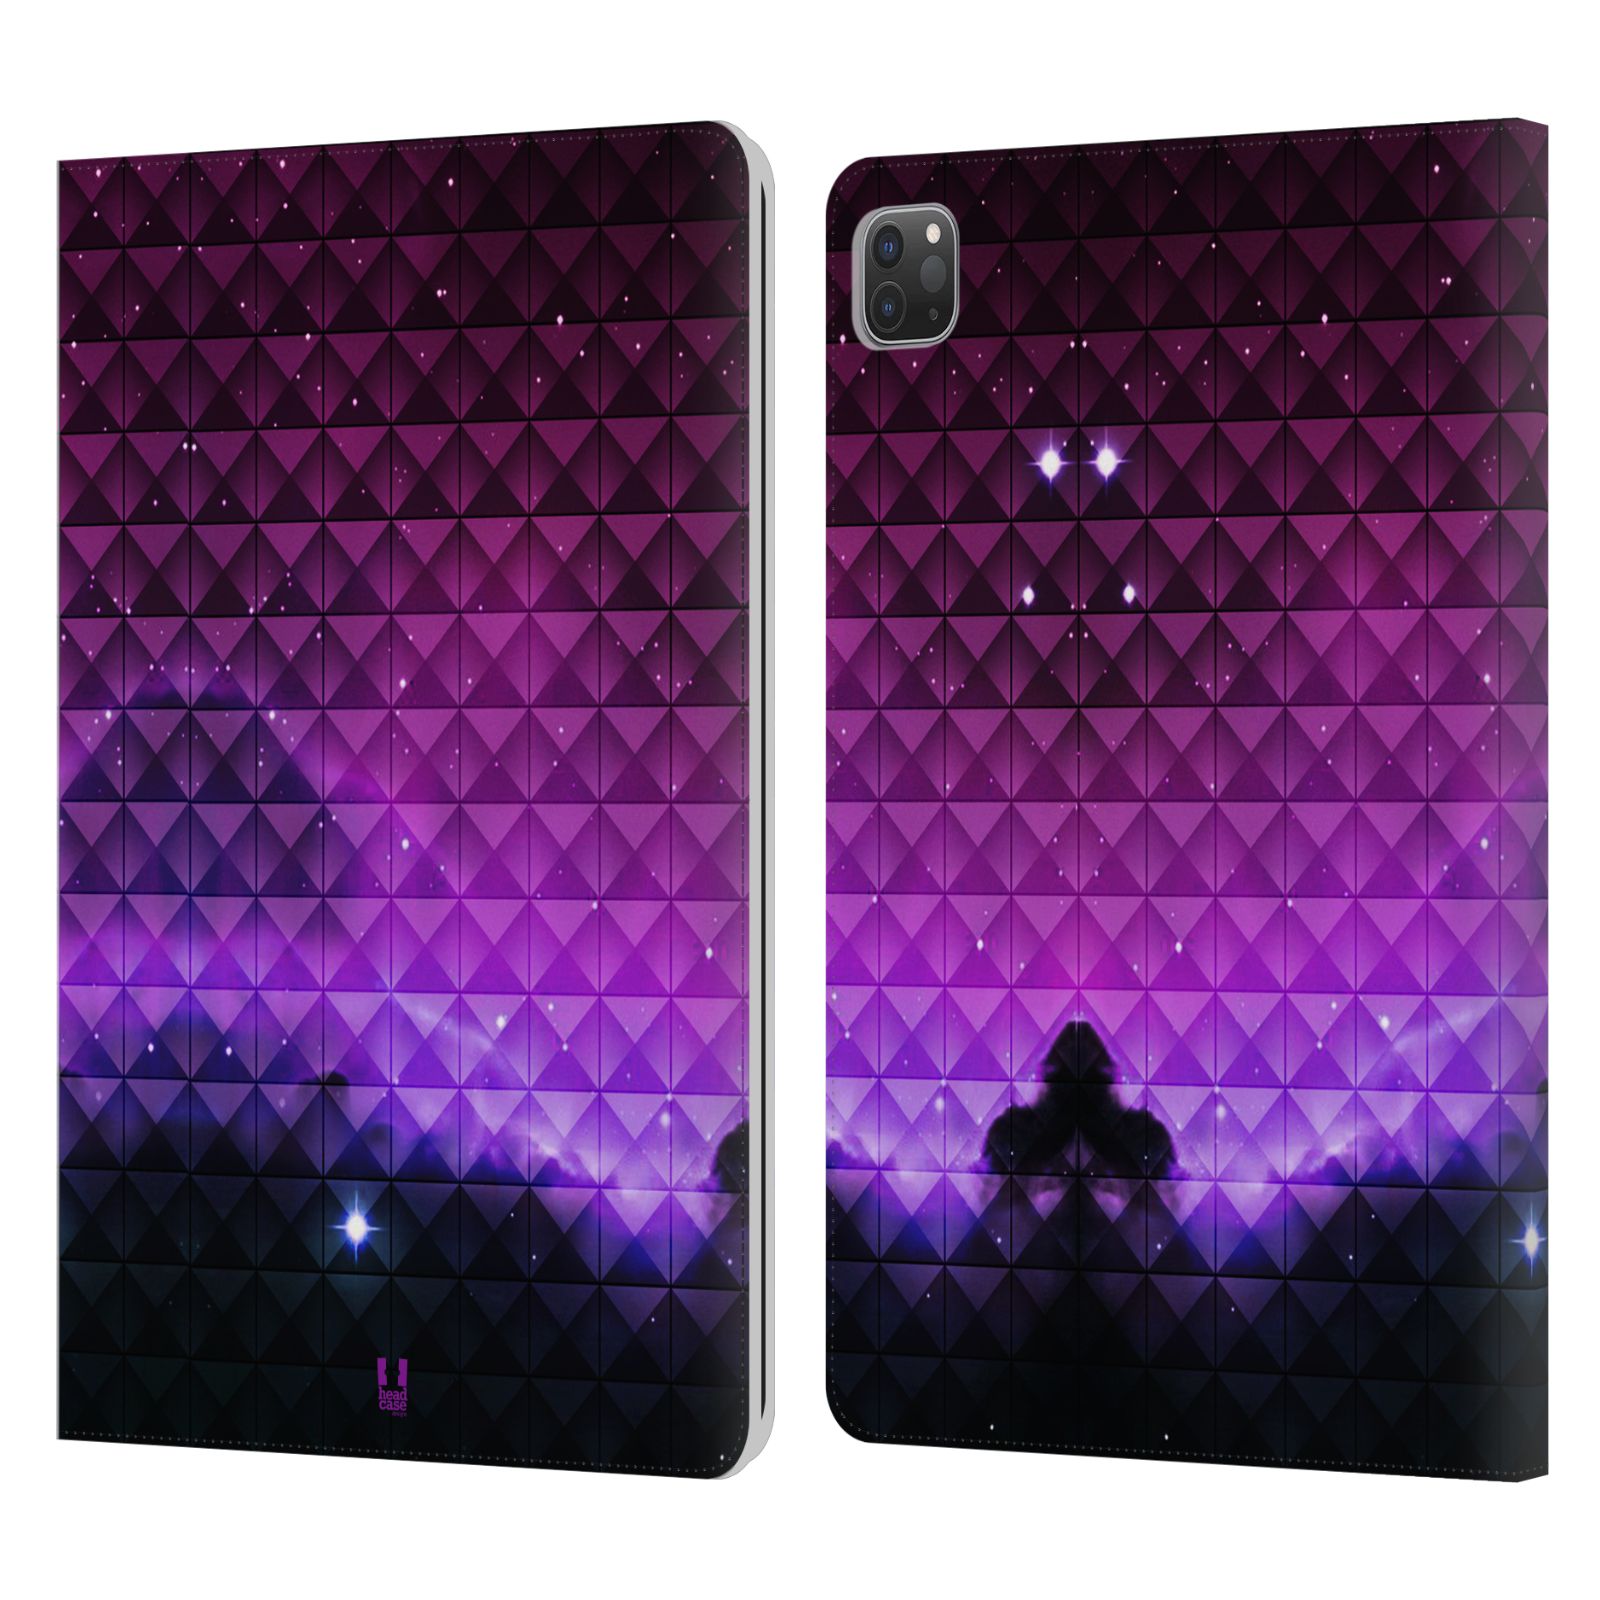 Pouzdro pro tablet Apple Ipad Pro 11 - HEAD CASE - barevná vesmírná mlhovina fialová a černá